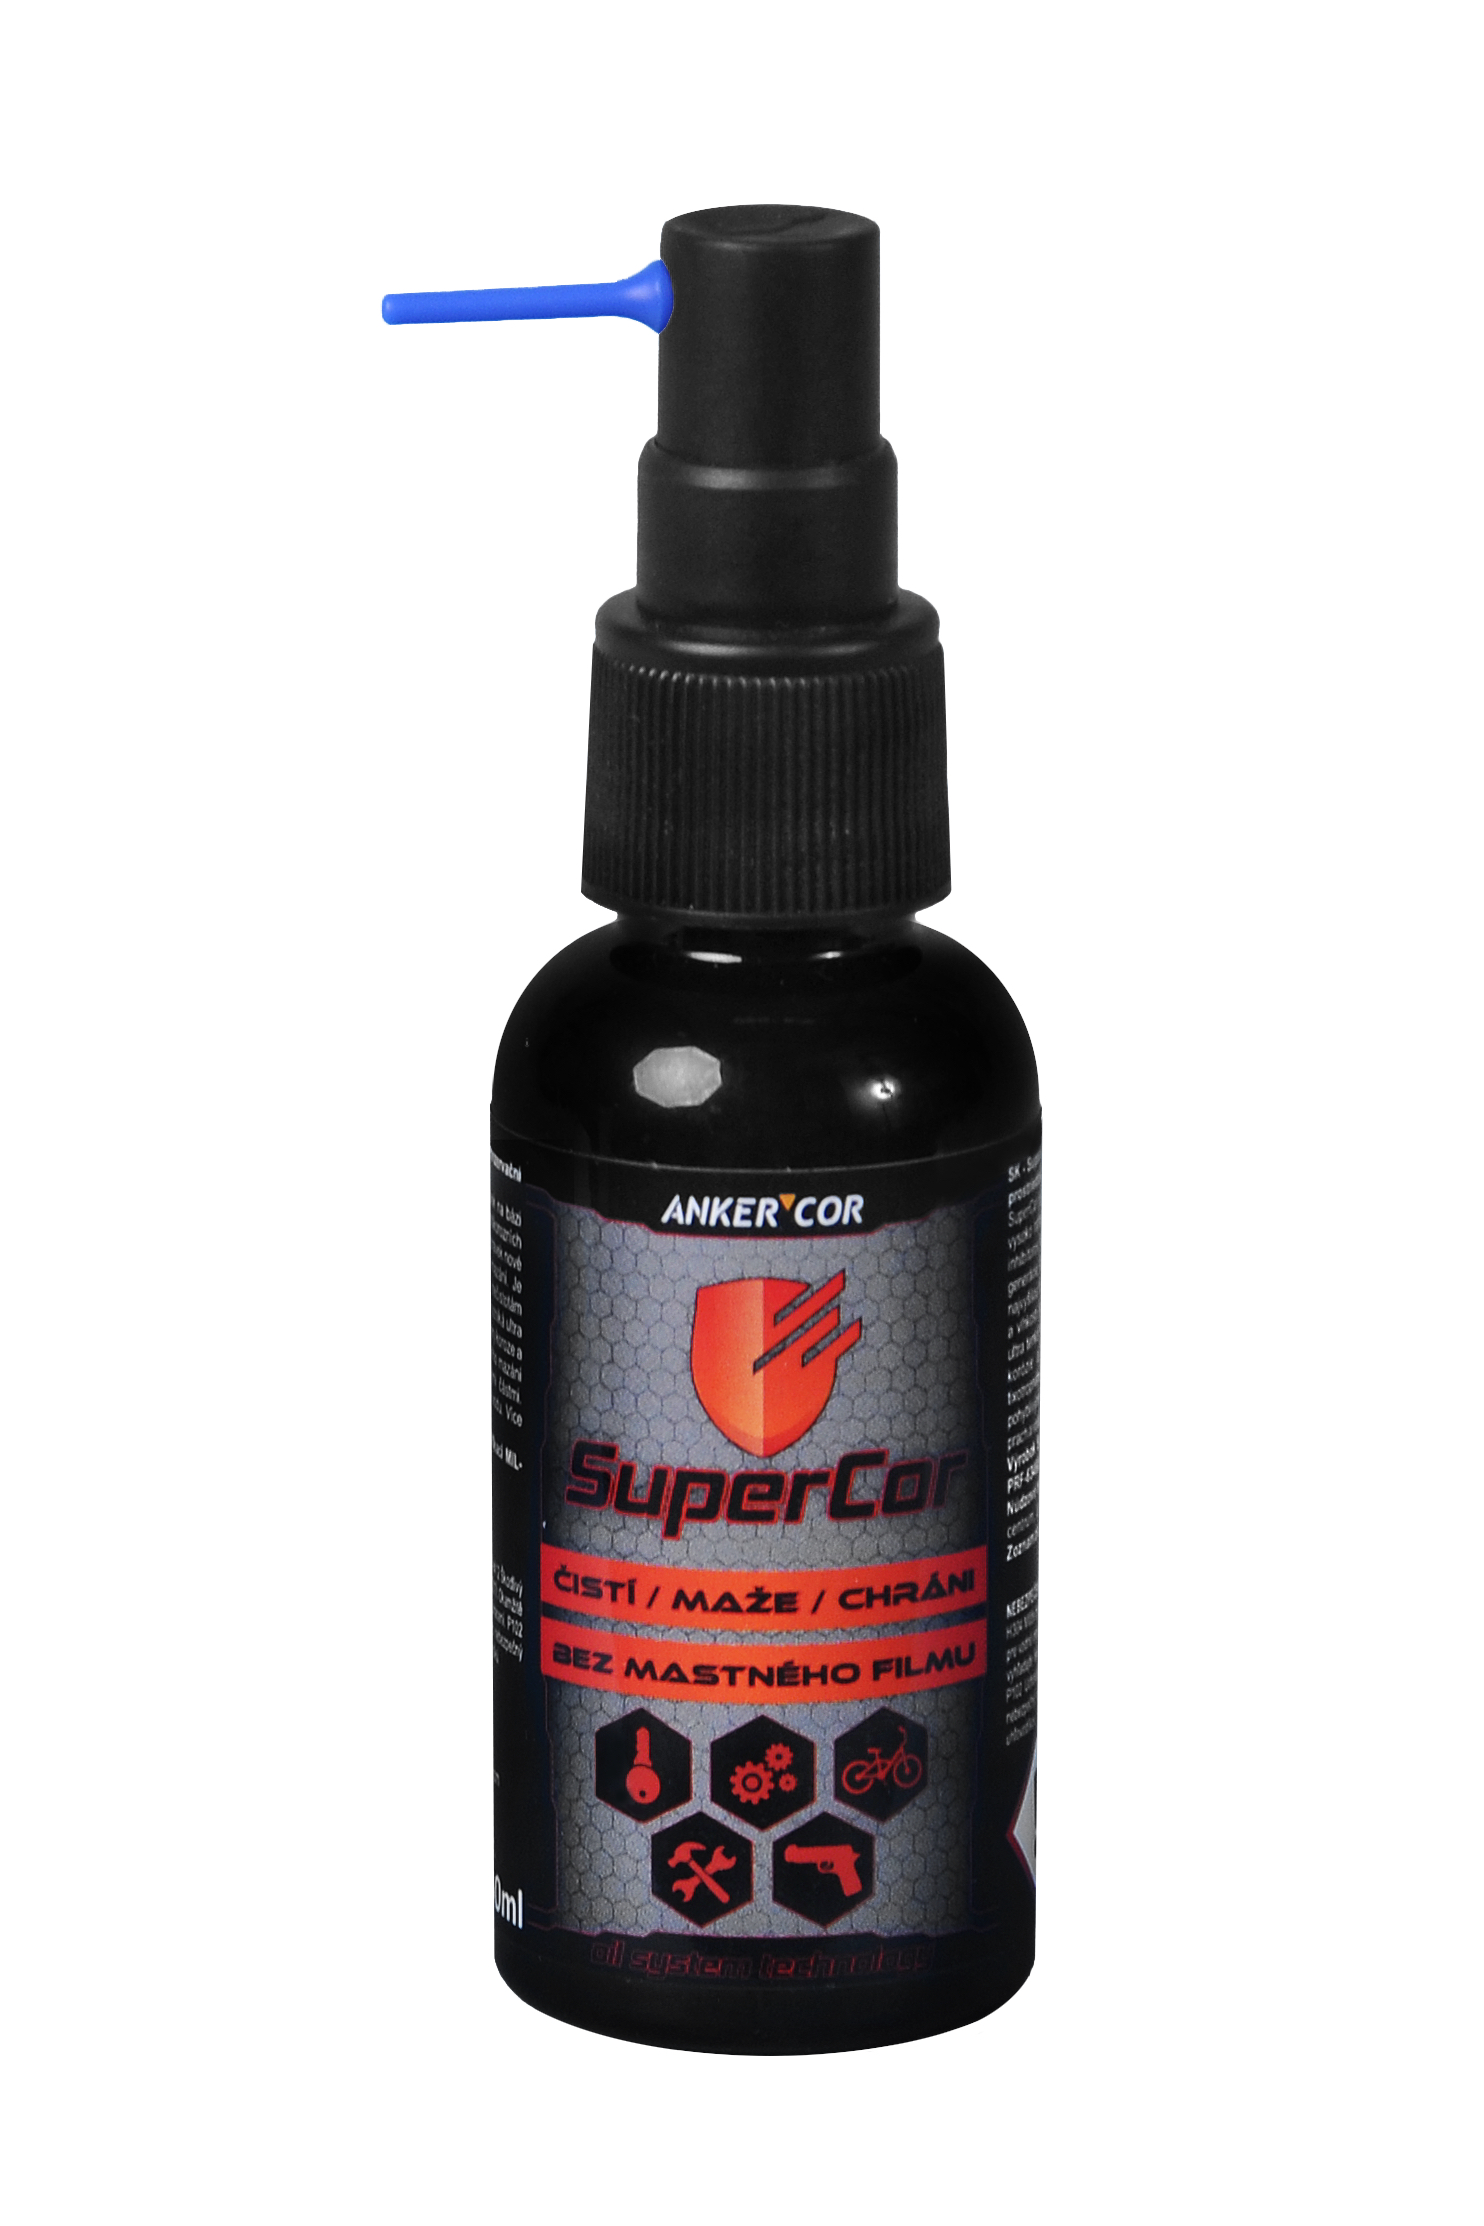 SuprCor - špeciálny olej pre čistenie, mazanie a ochranu pohyblivých častí